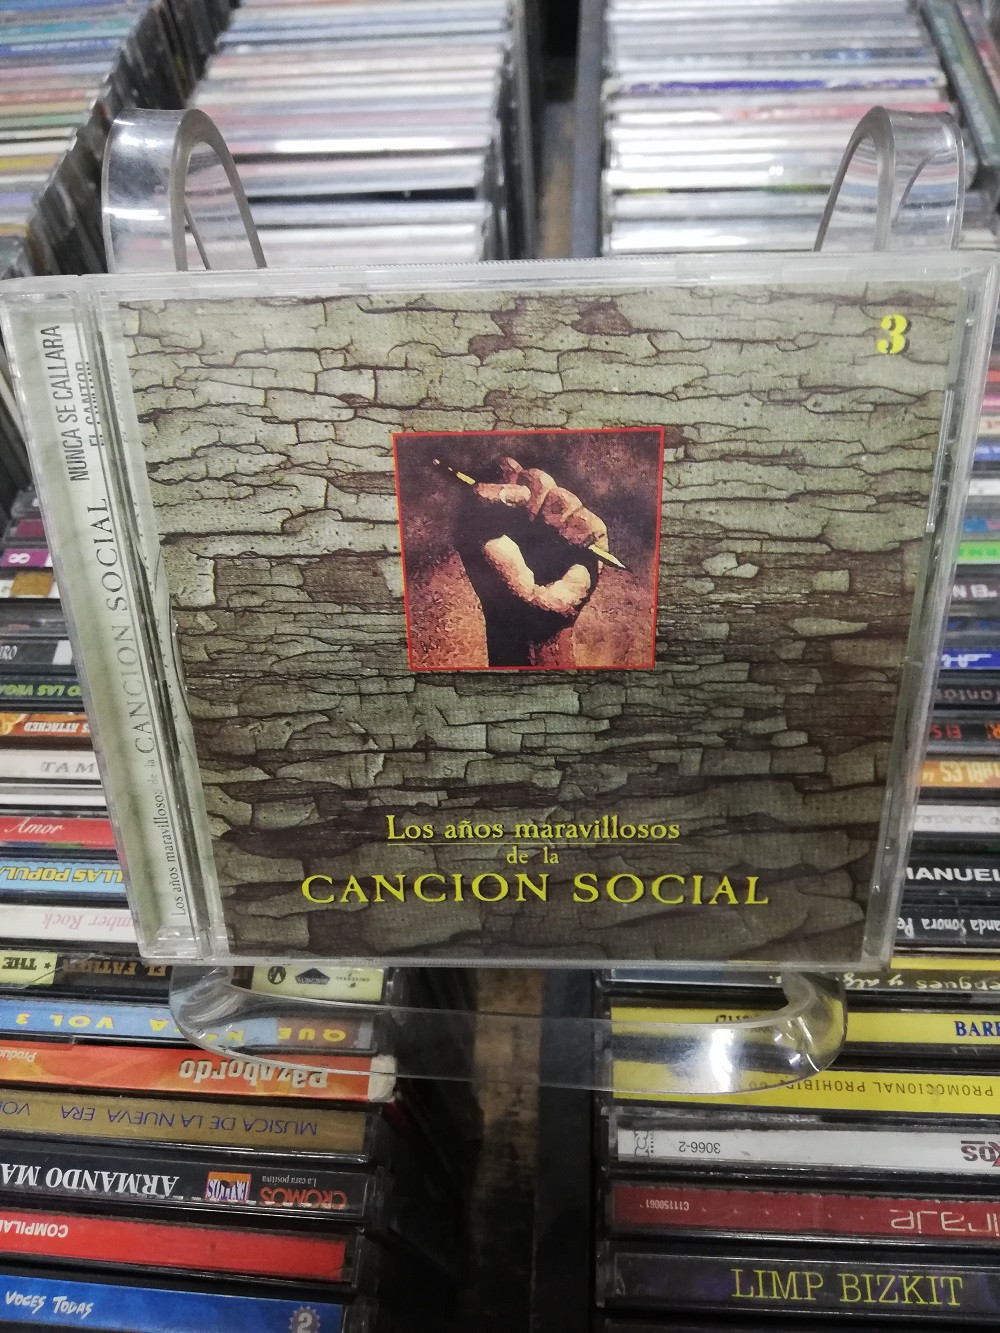 Imagen CD LOS AÑOS MARAVILLOSOS DE LA CANCIÓN SOCIAL VOL. 3 1